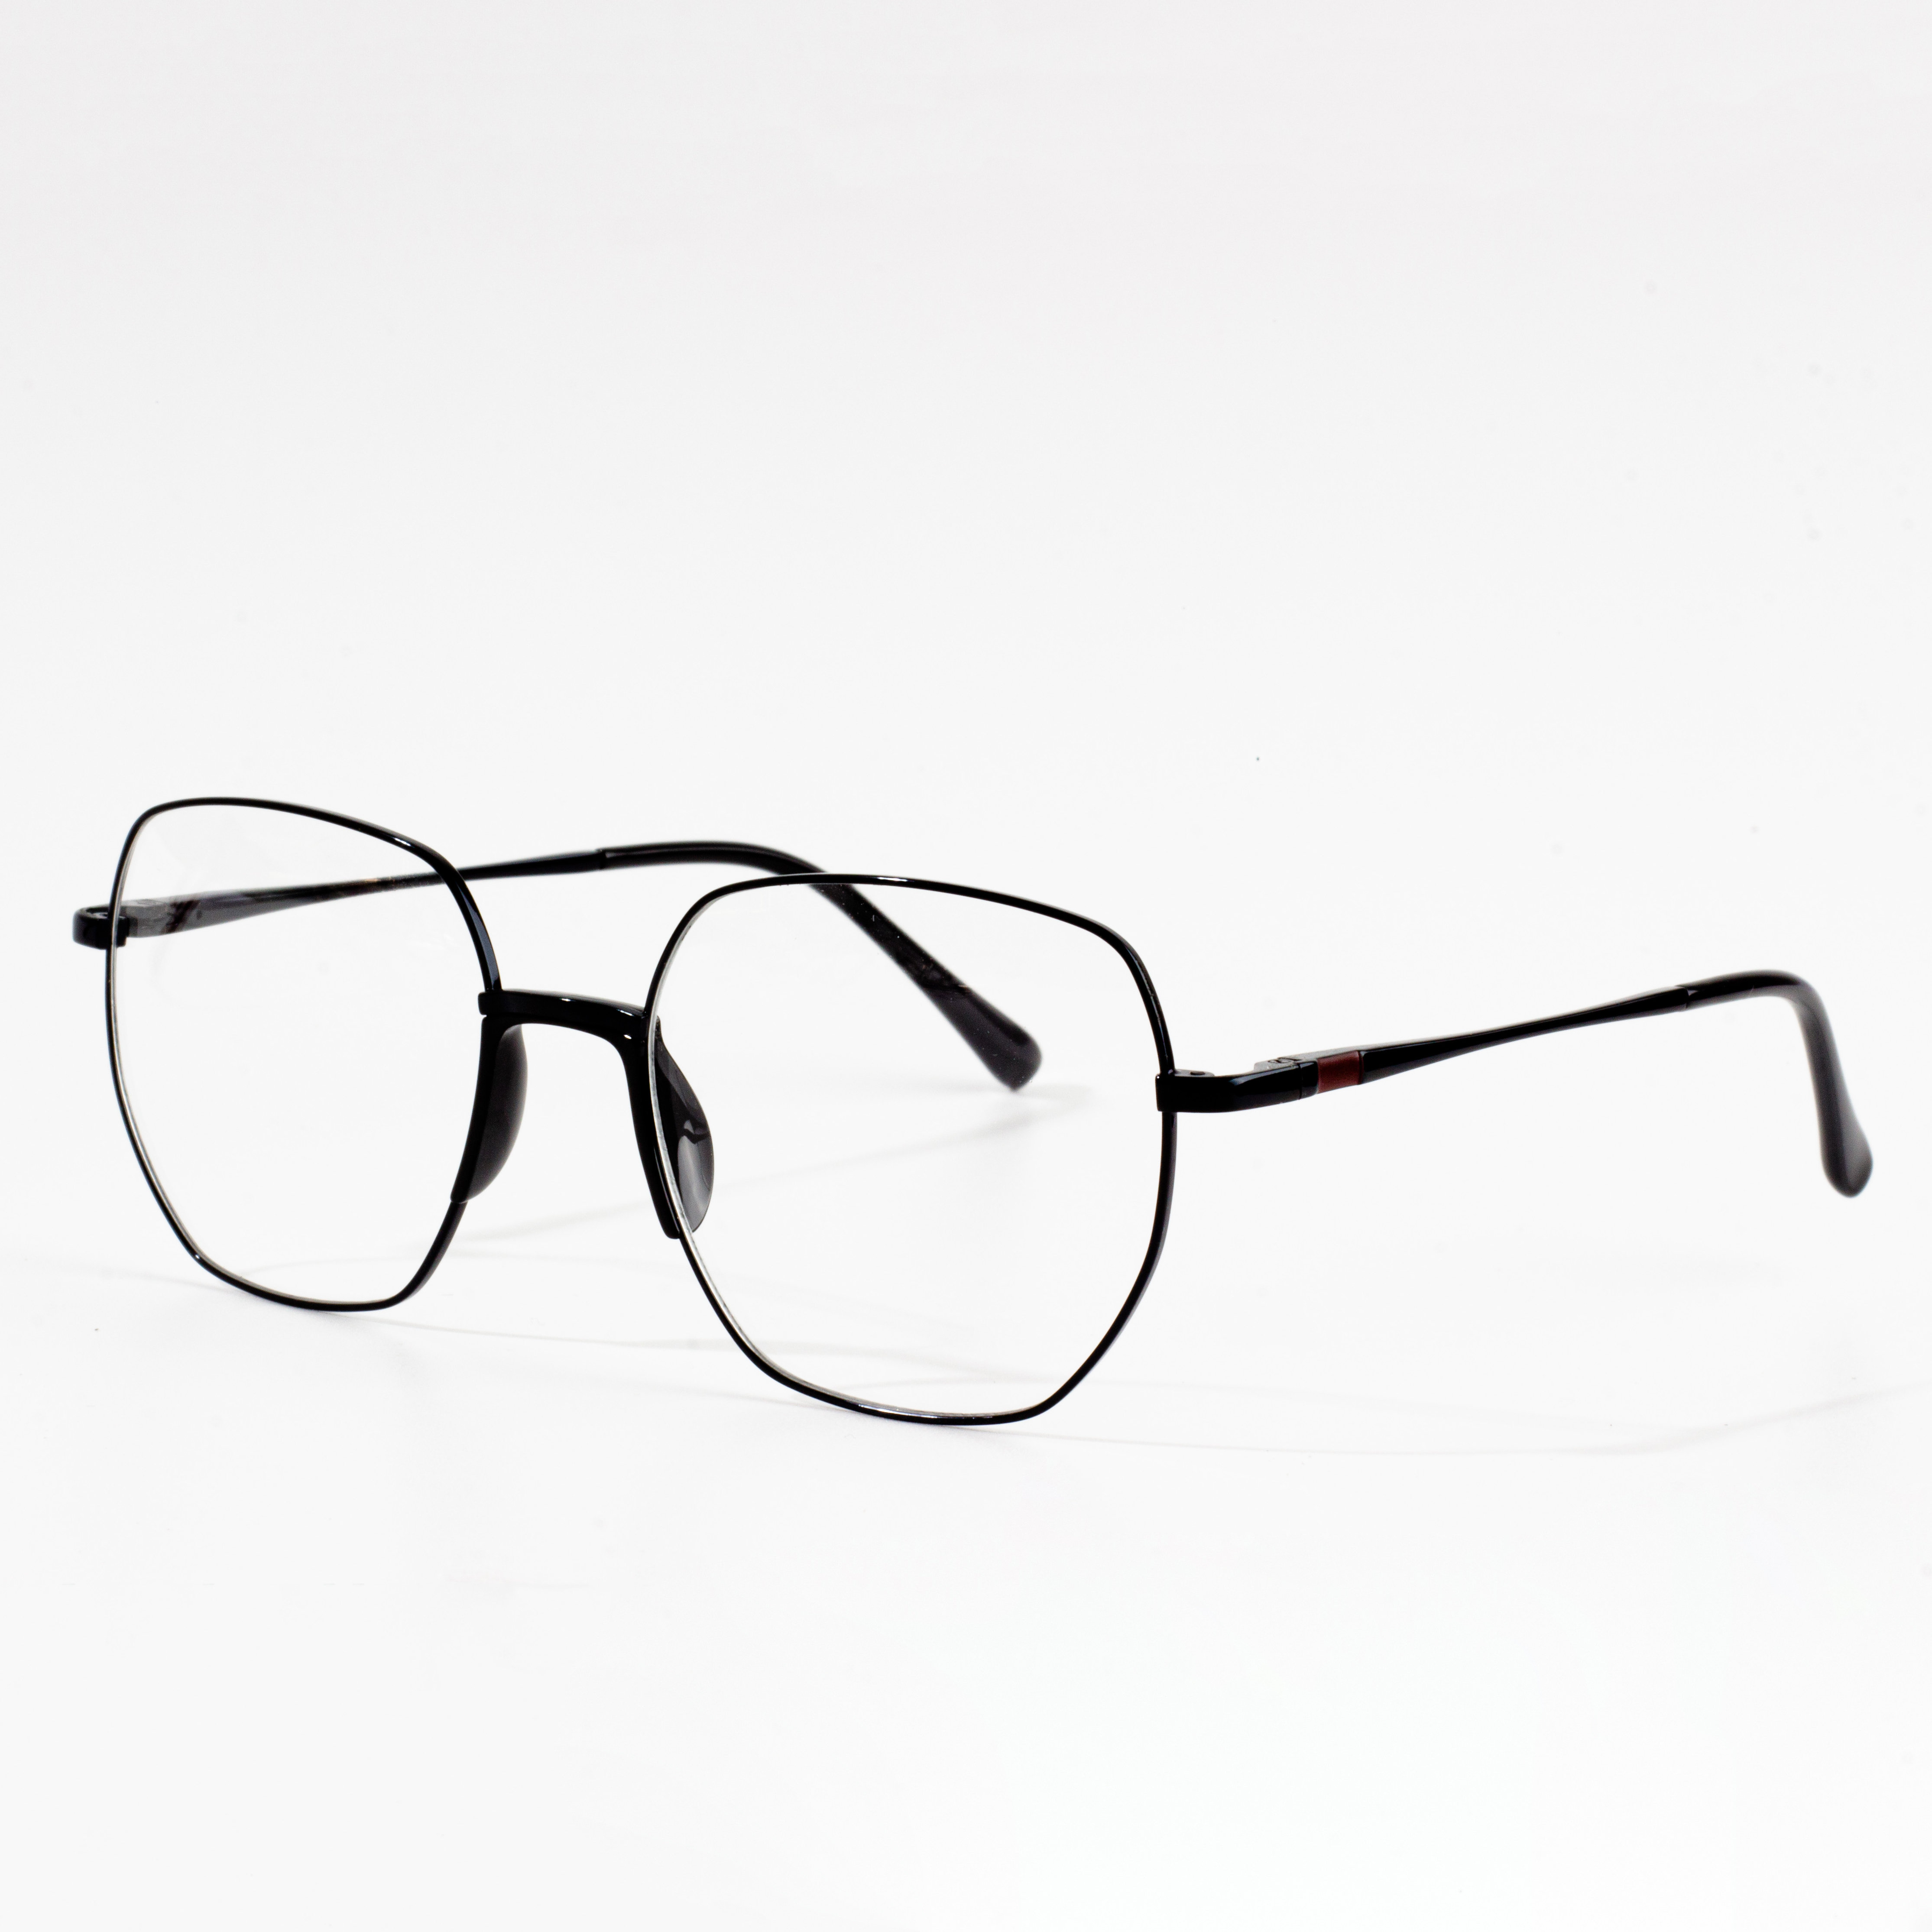 Syze syze me lente të qarta me kornizë me stil stili VINTAGE E ZI